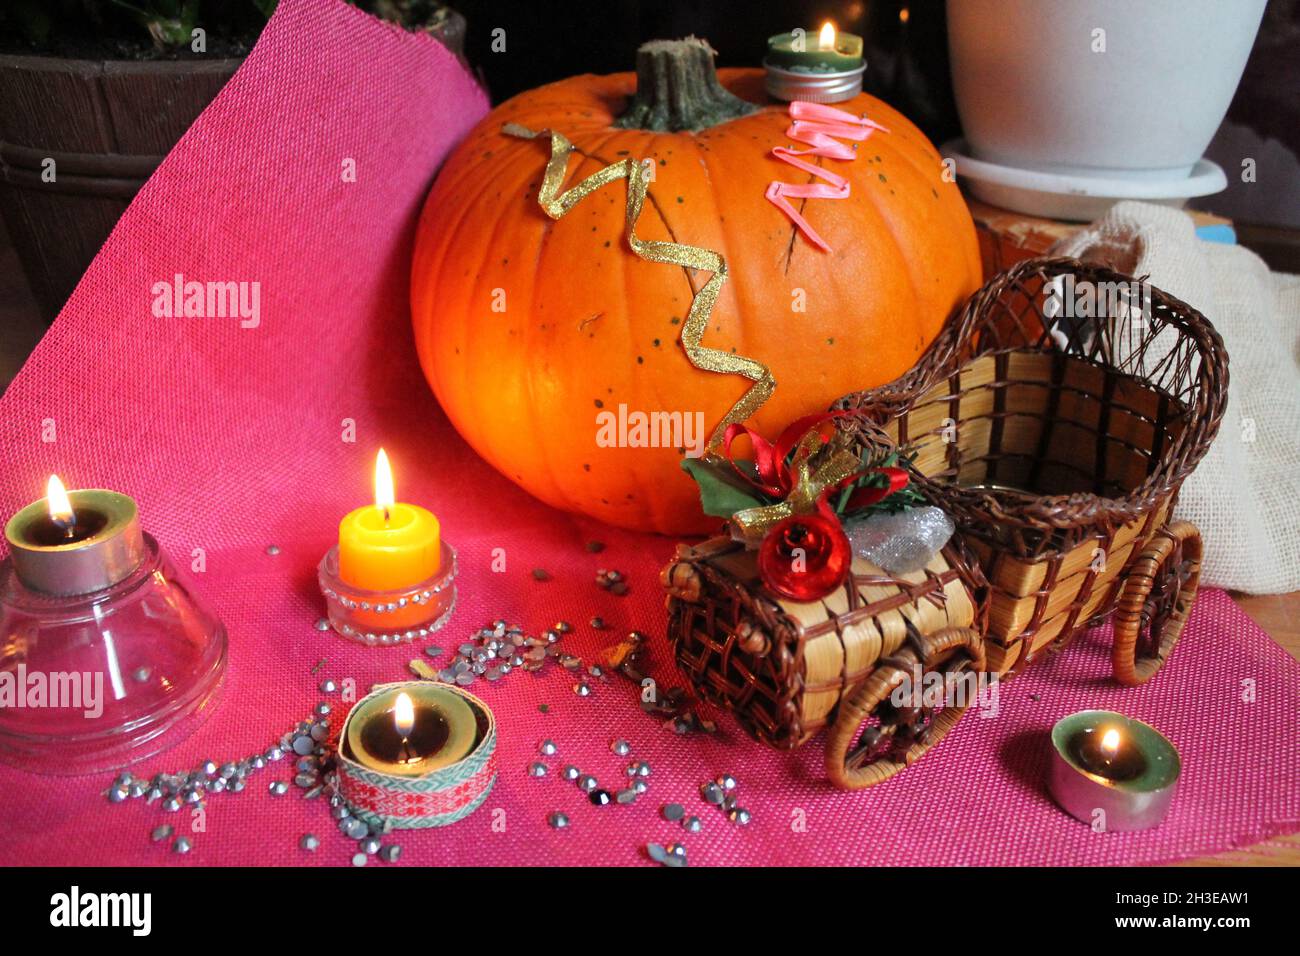 Calabaza naranja grande hermosa con velas para la decoración en vacaciones de Halloween Foto de stock